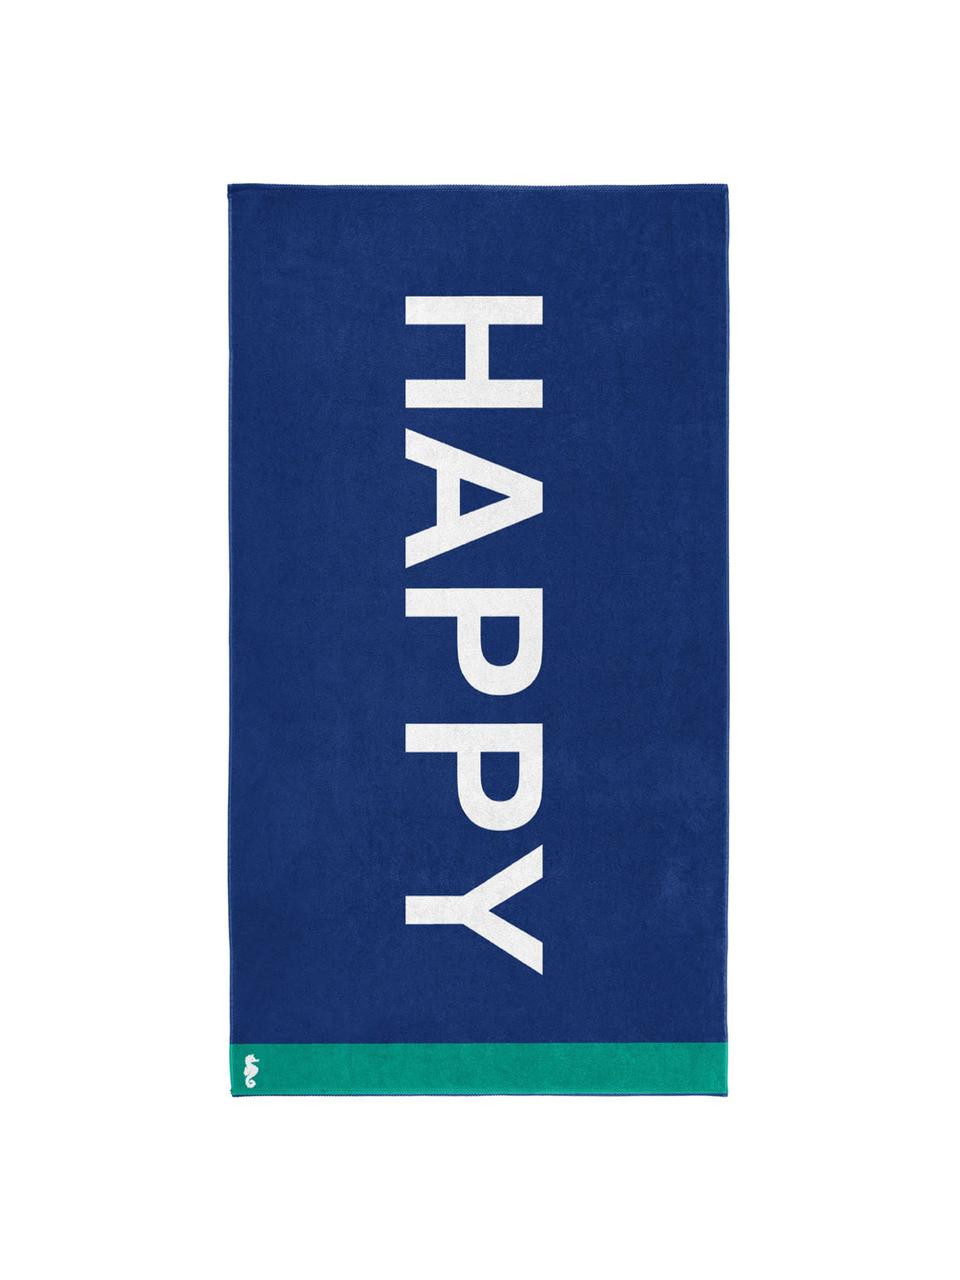 Strandlaken Happy, Fluweel (katoen)
middelzware stofkwaliteit, 420 g/m², Blauw, wit, groen, 100 x 180 cm